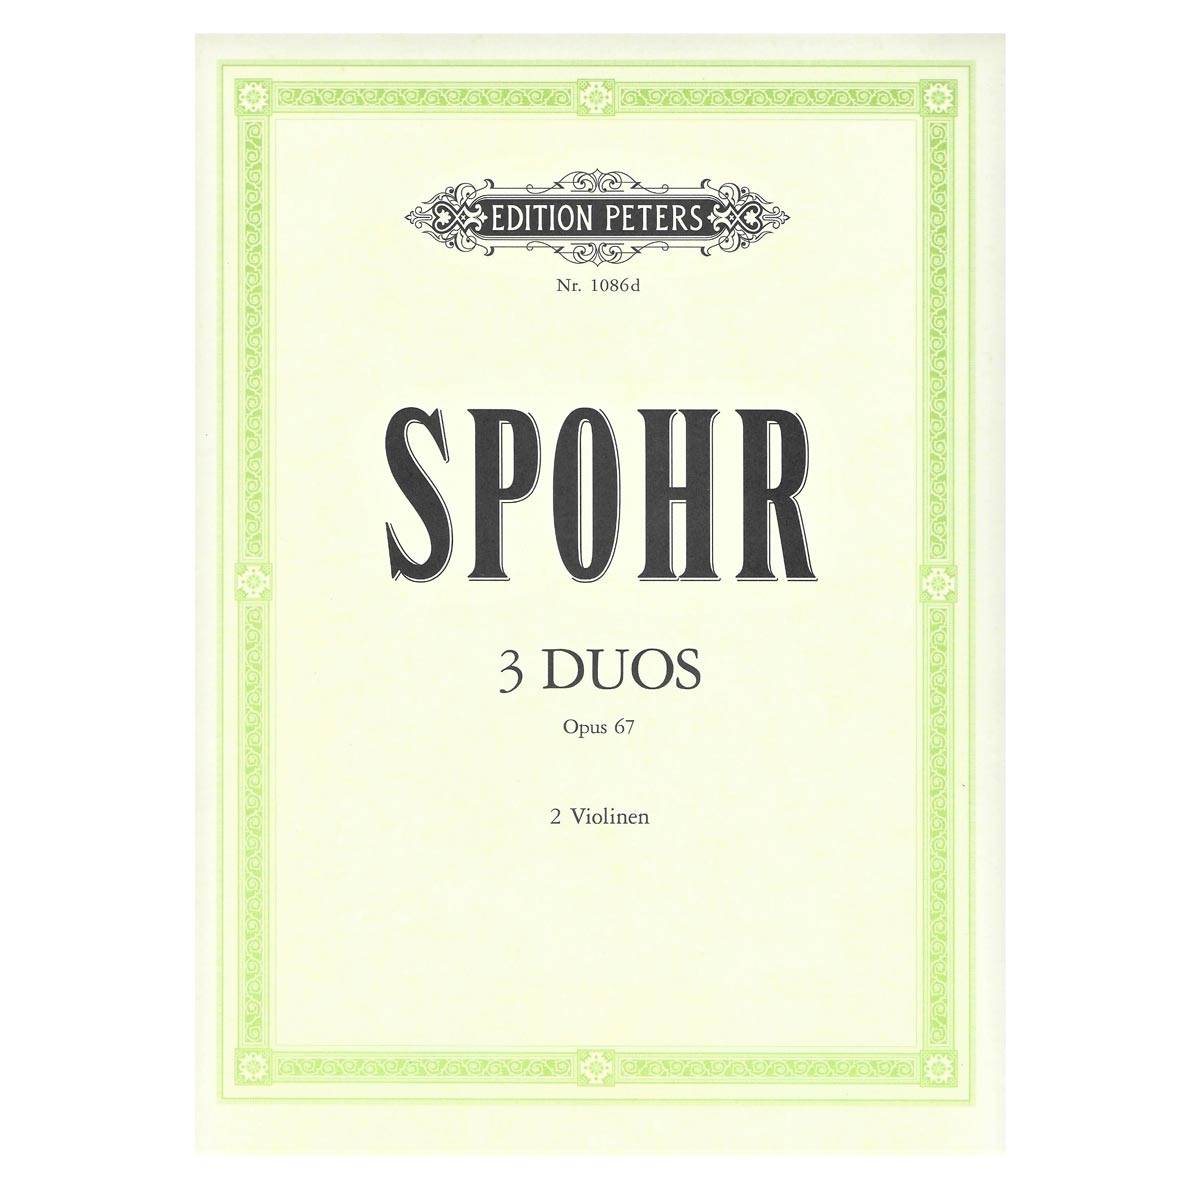 Spohr - 3 Duos Opus 67